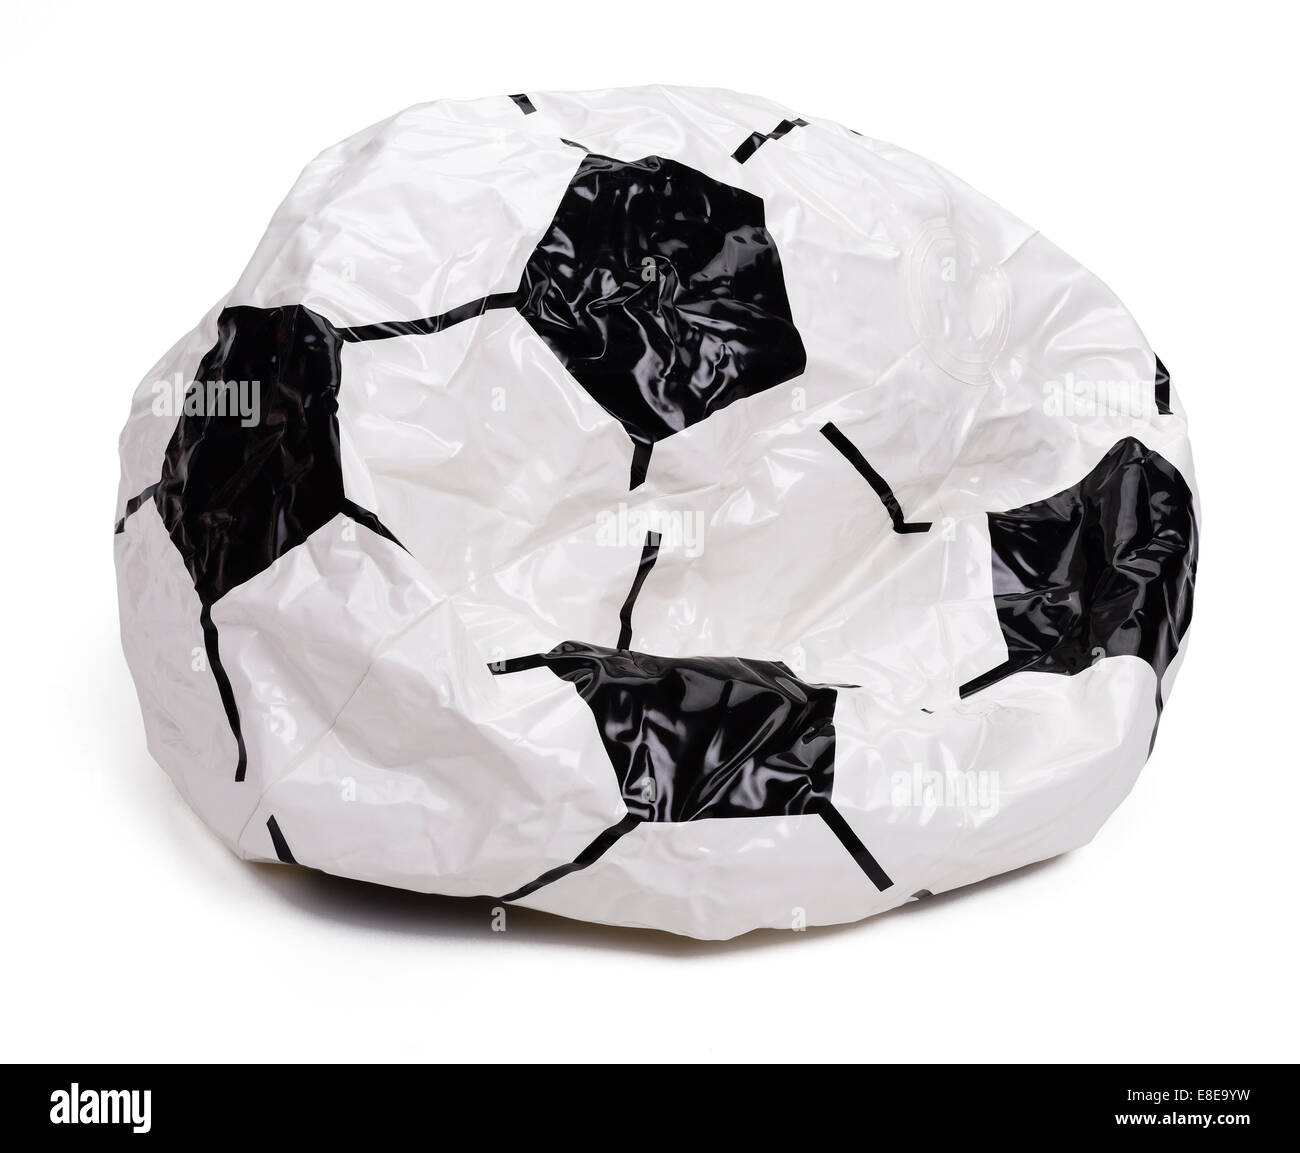 Diseño de fútbol playa balón desinflado Foto de stock